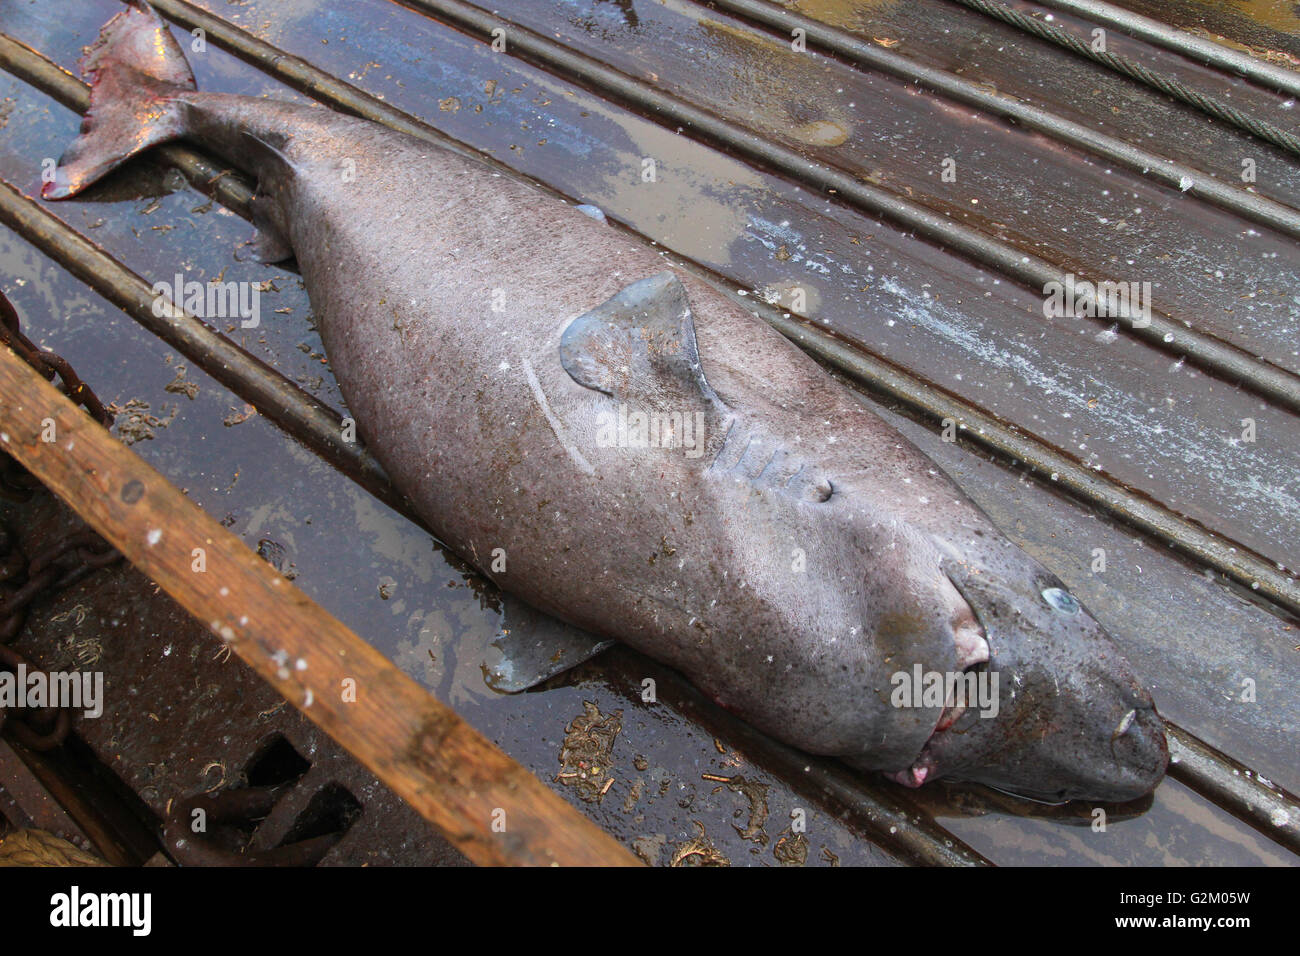 Requins morts près de la plate-forme de chalutier de pêche. Banque D'Images